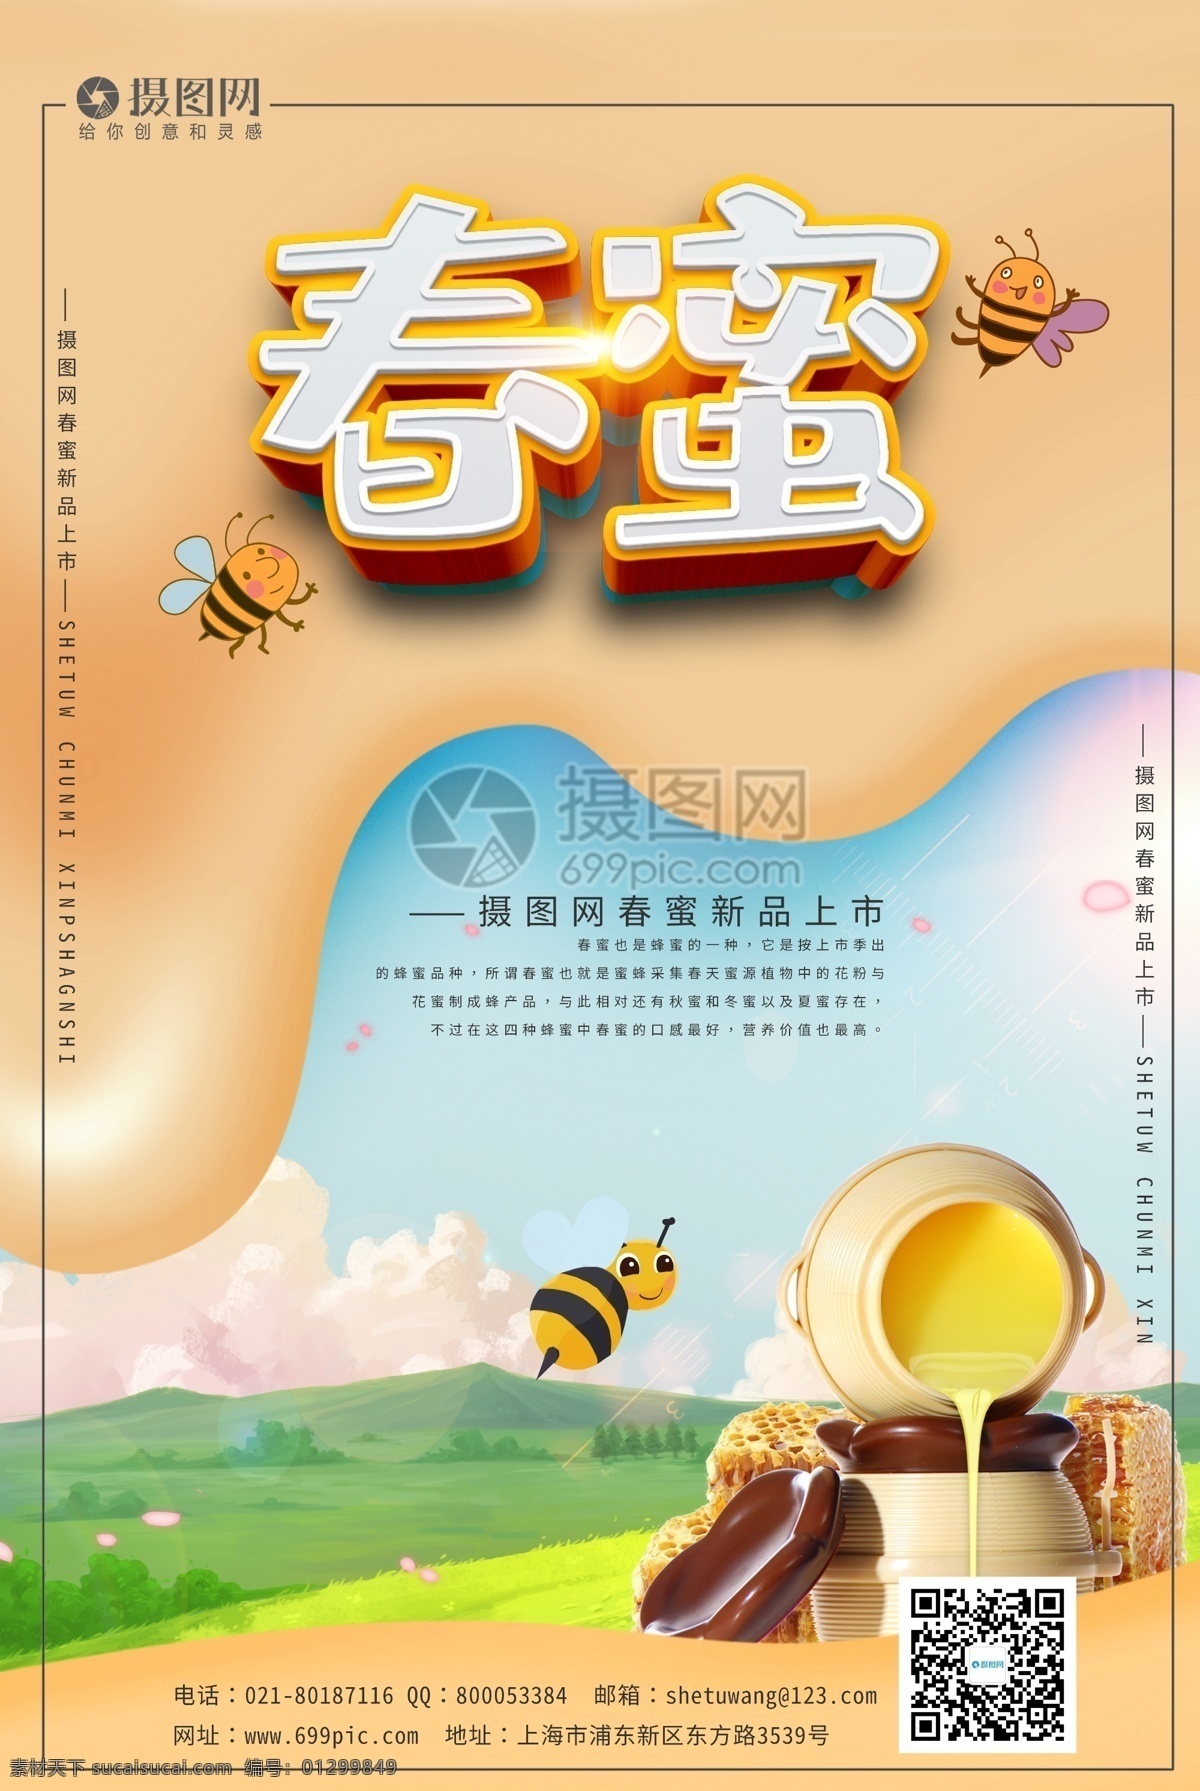 小清 新春 蜜 宣传海报 模板 春蜜 蜂蜜 蜂蜜海报 油菜花蜜 蜜蜂海报 春蜜促销海报 蜂蜜促销海报 新品蜂蜜